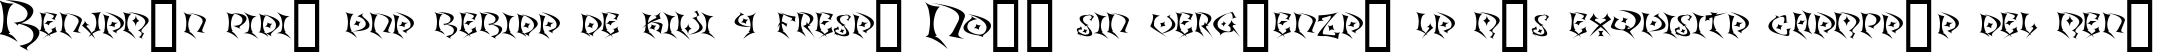 Пример написания шрифтом Kefka текста на испанском